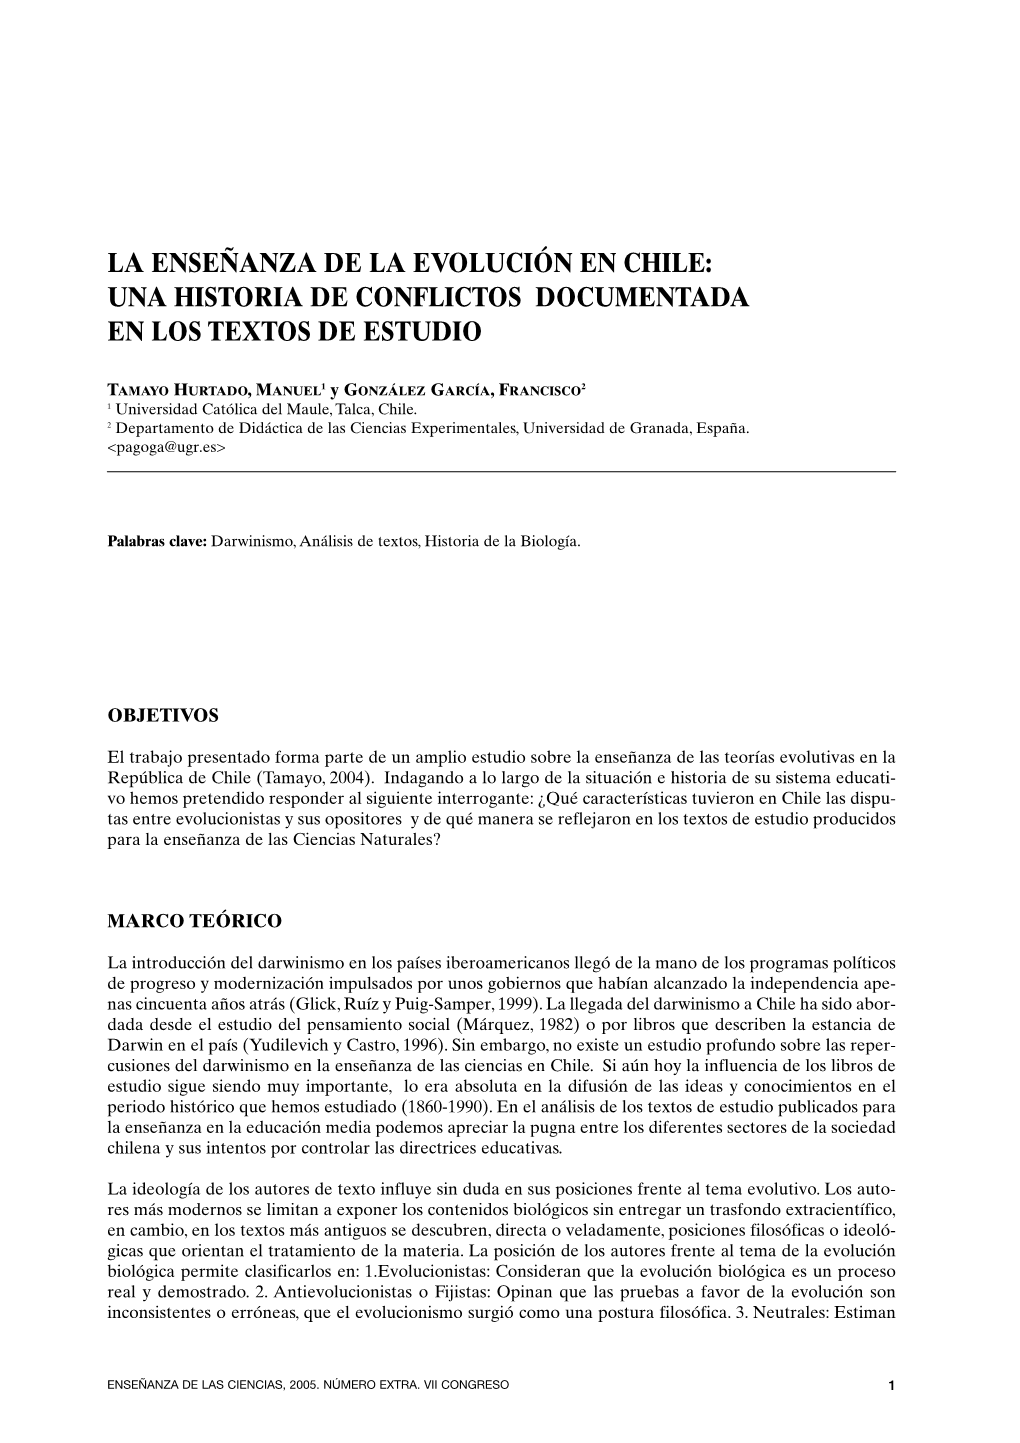 La Enseñanza De La Evolución En Chile: Una Historia De Conflictos Documentada En Los Textos De Estudio